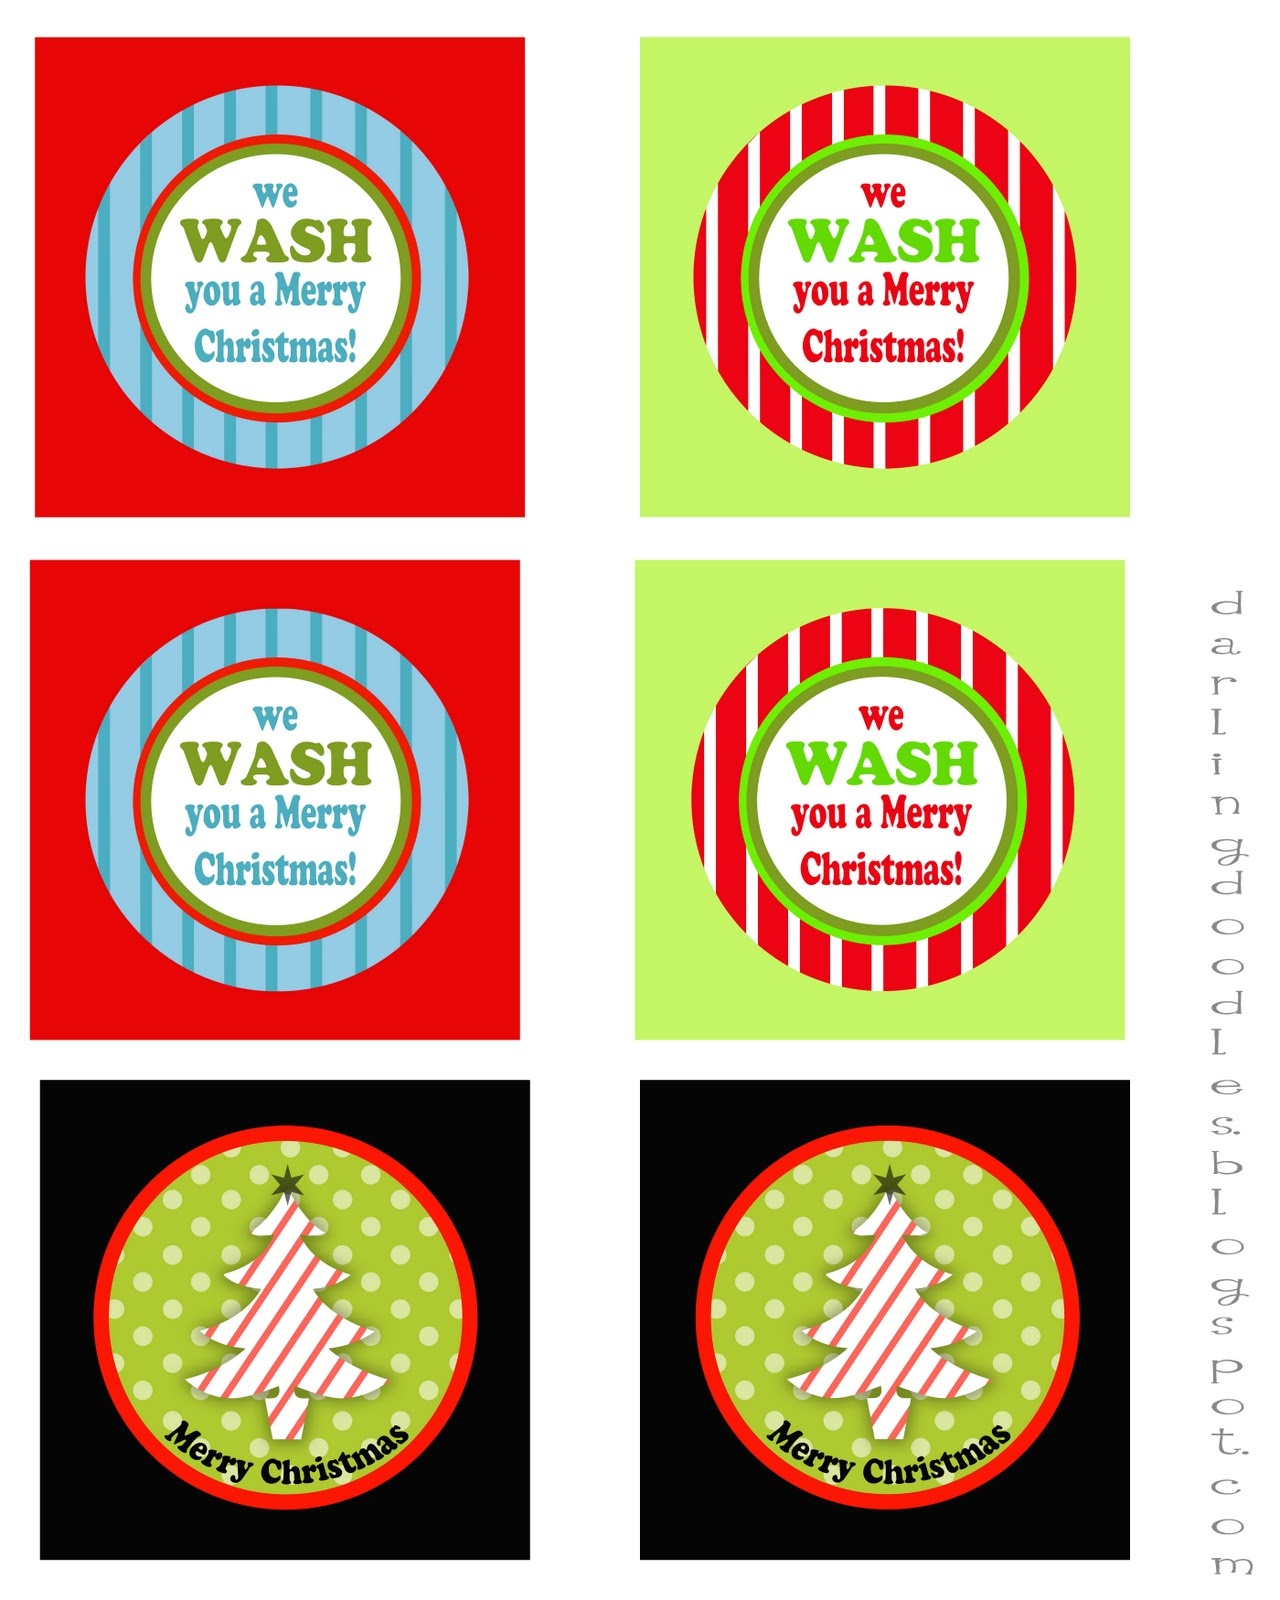 We Wash You A Merry Christmas Free Printable – Festival Collections - We Wash You A Merry Christmas Free Printable